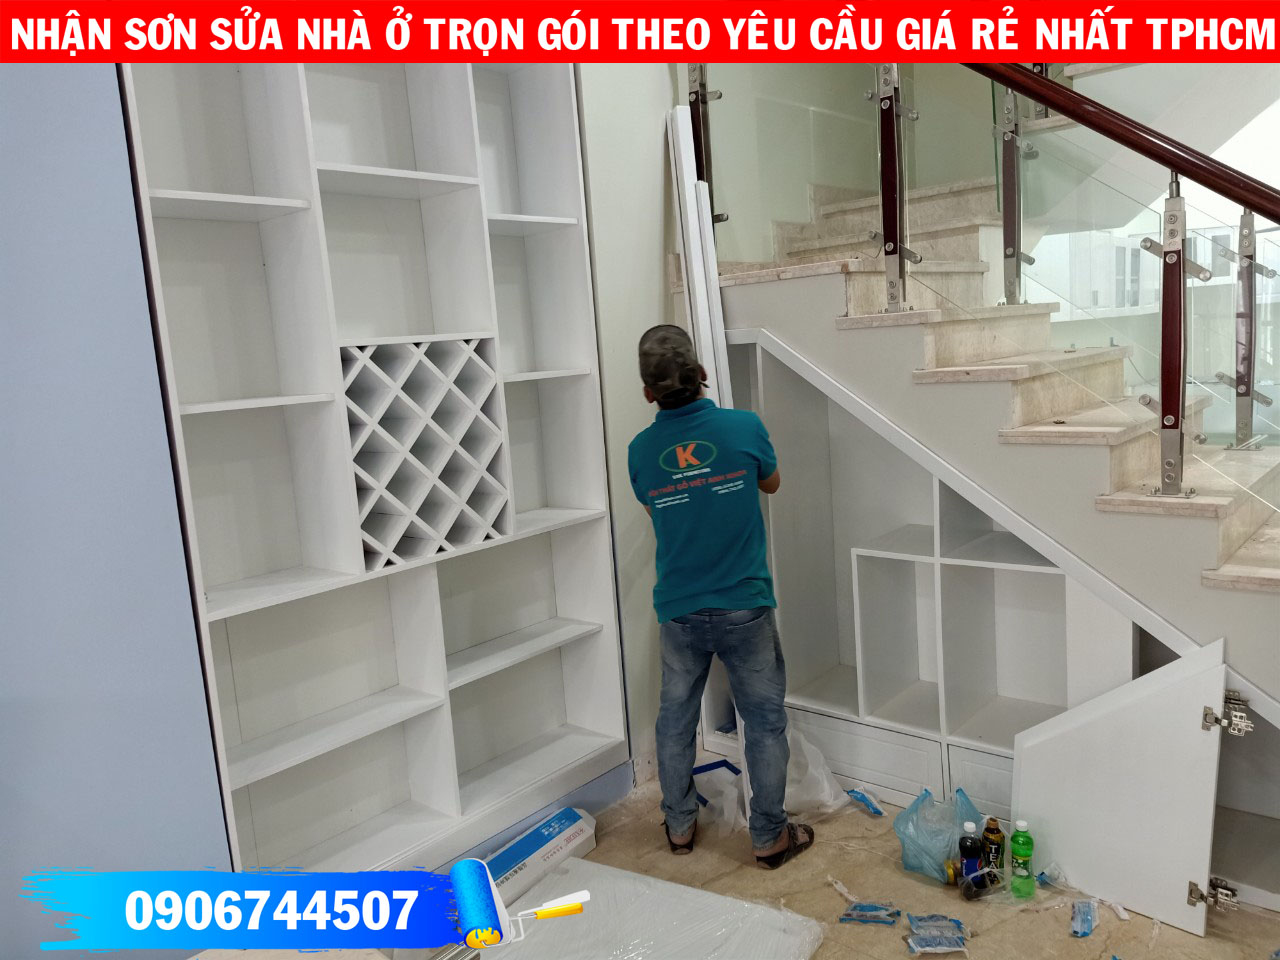 Nhận sơn sửa nội thất nhà ở trọn gói giá rẻ nhất TPHCM 2020